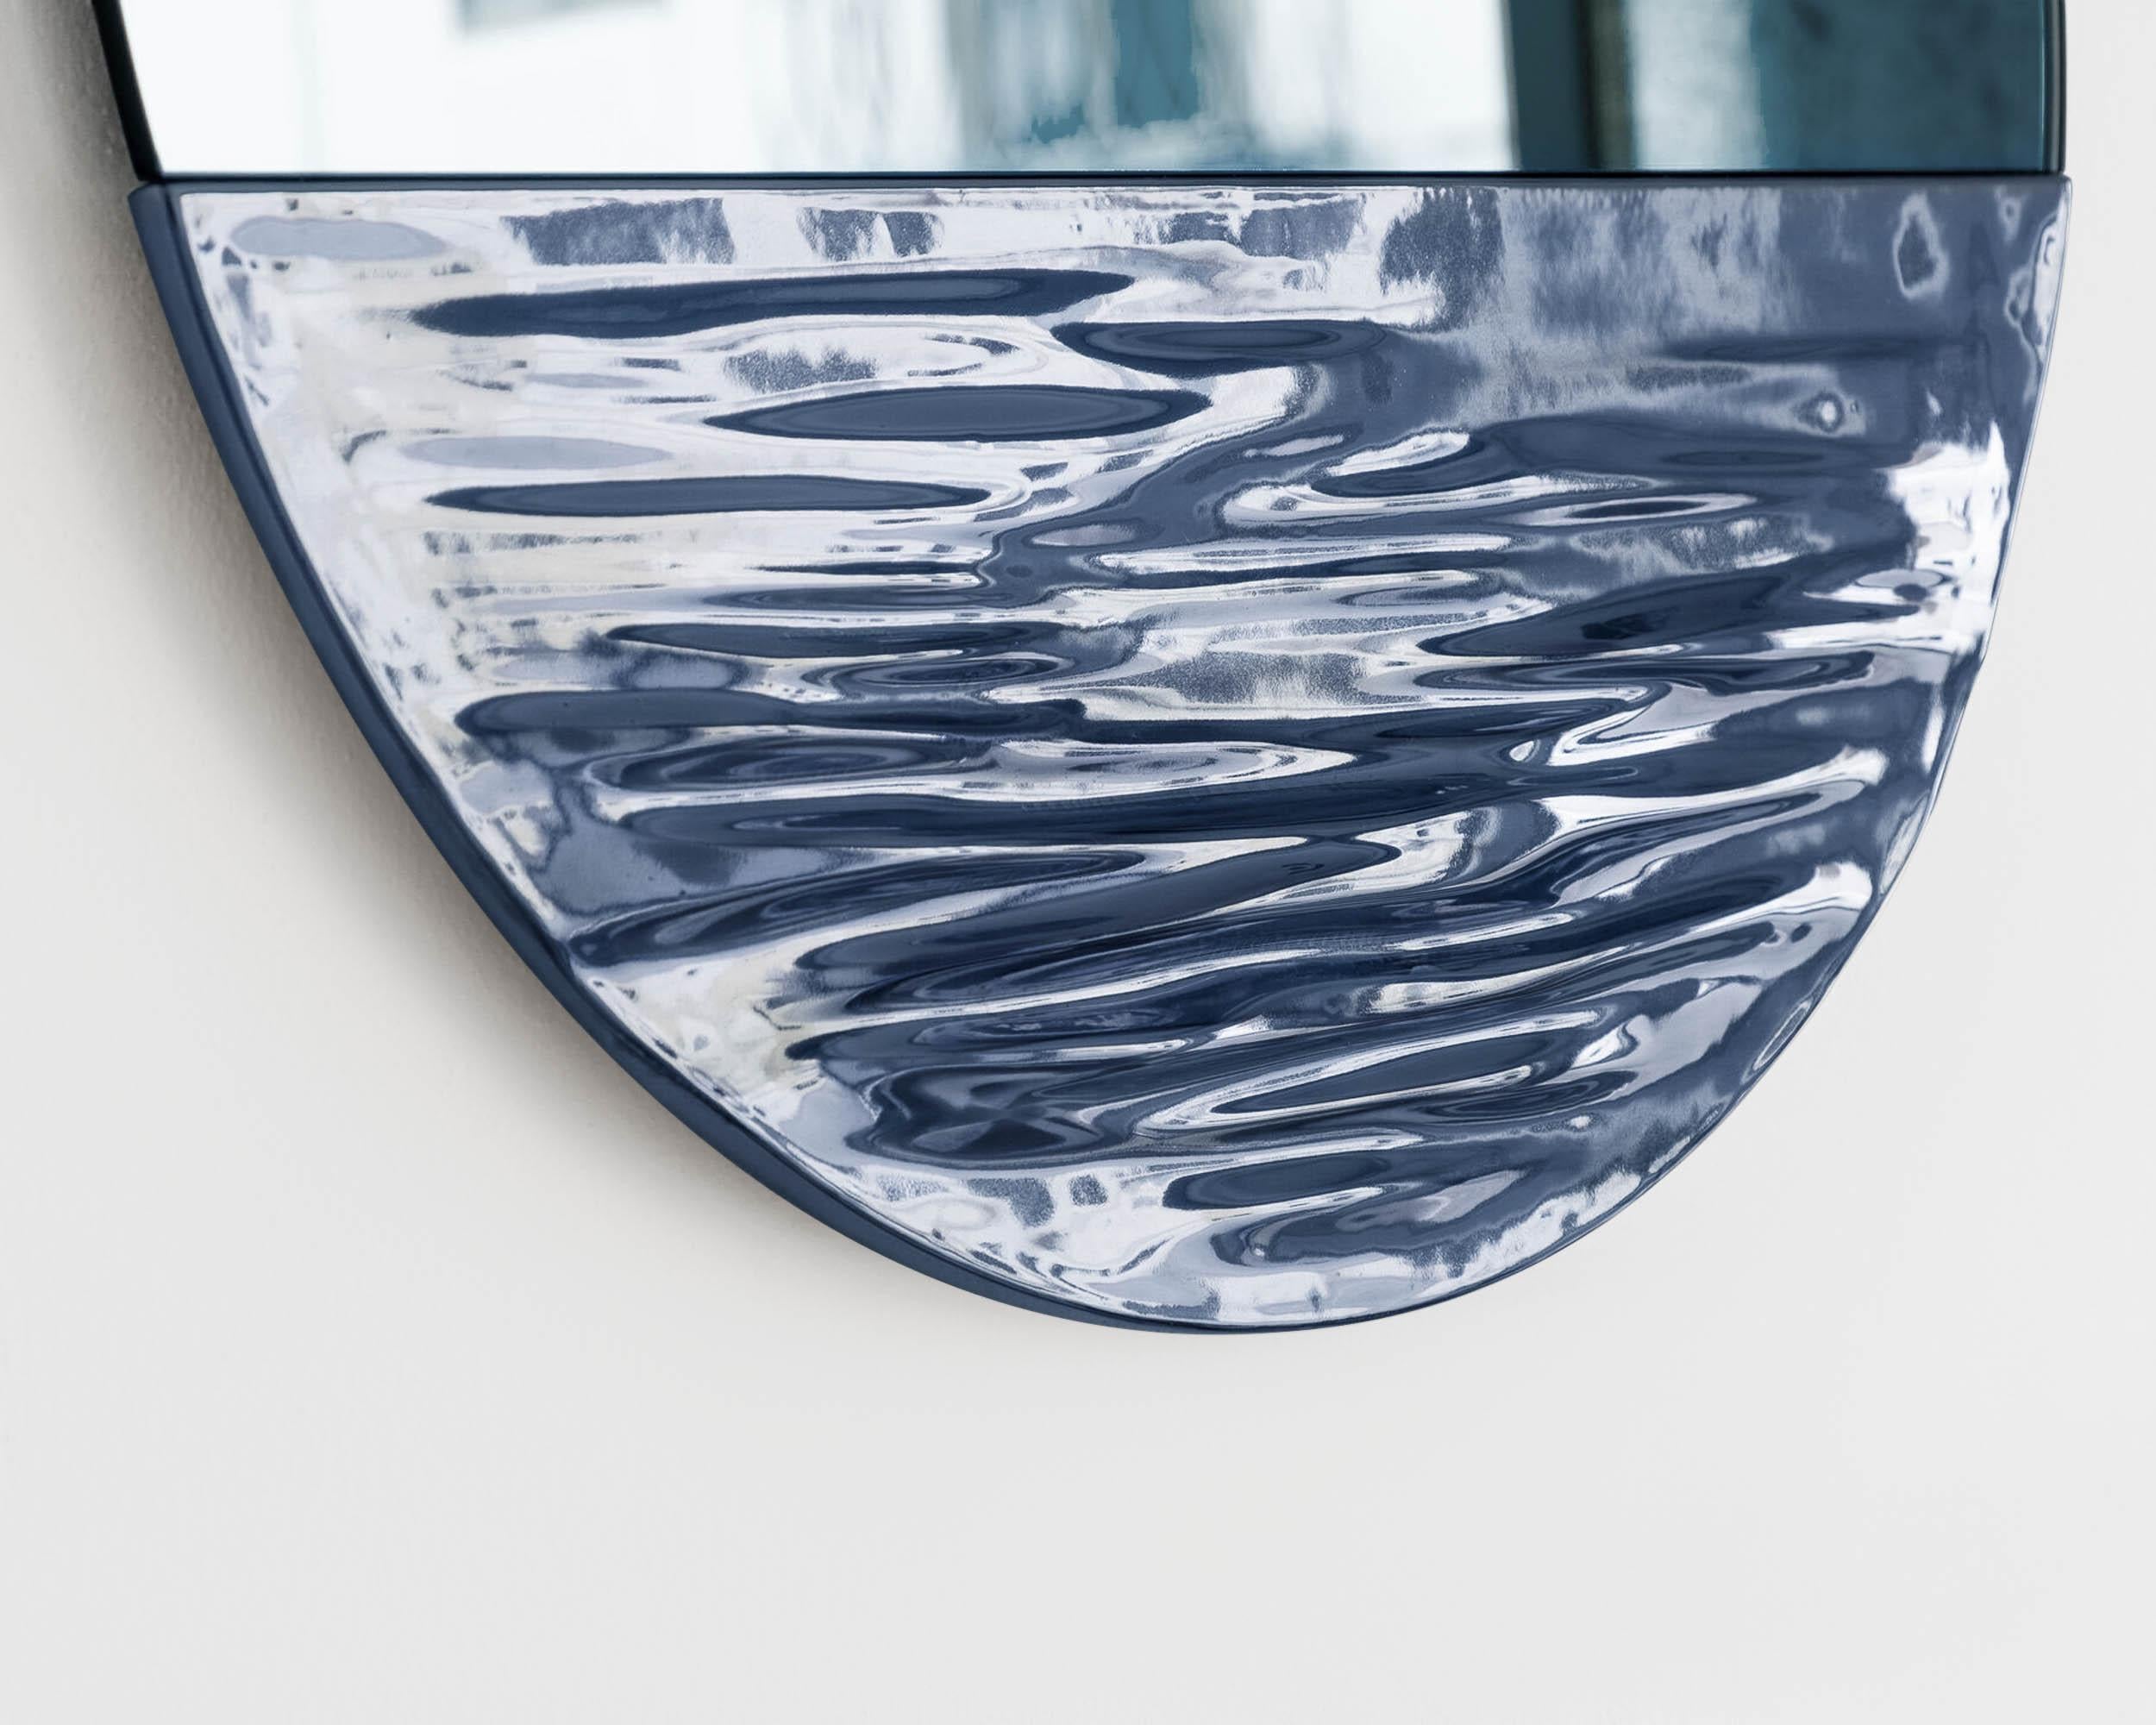 Orizon bleu nuit
Miroir rond signé par Ocrùm 

Dimensions : 21.75 x 1.75 in
Matériaux : Céramique émaillée décorée à la main et miroir en verre
Couleurs : Bleu vif avec miroir bleu clair
Personnalisation : La teinte du verre, la finition du